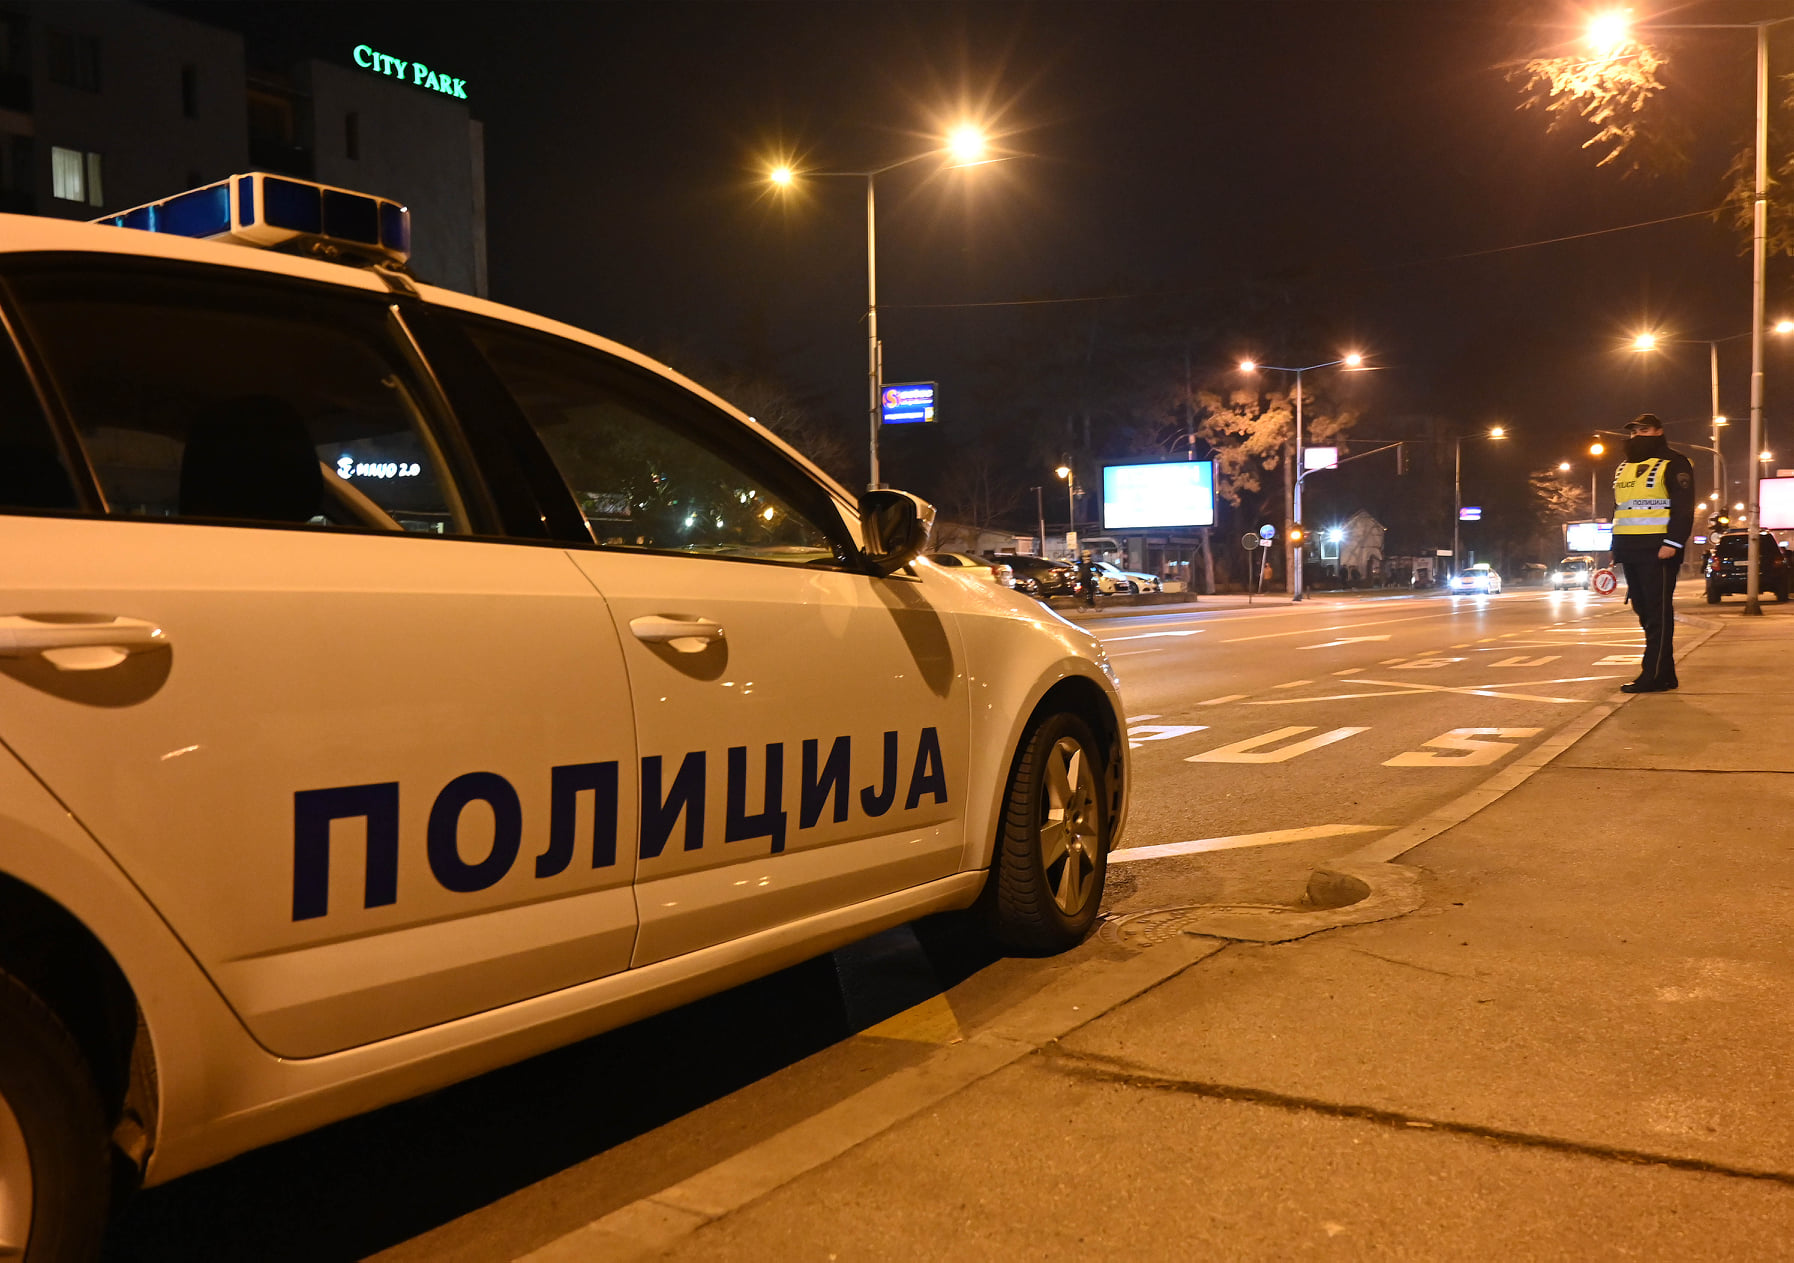 По сообраќајката кај Сити мол возачот е приведен во полициска станица